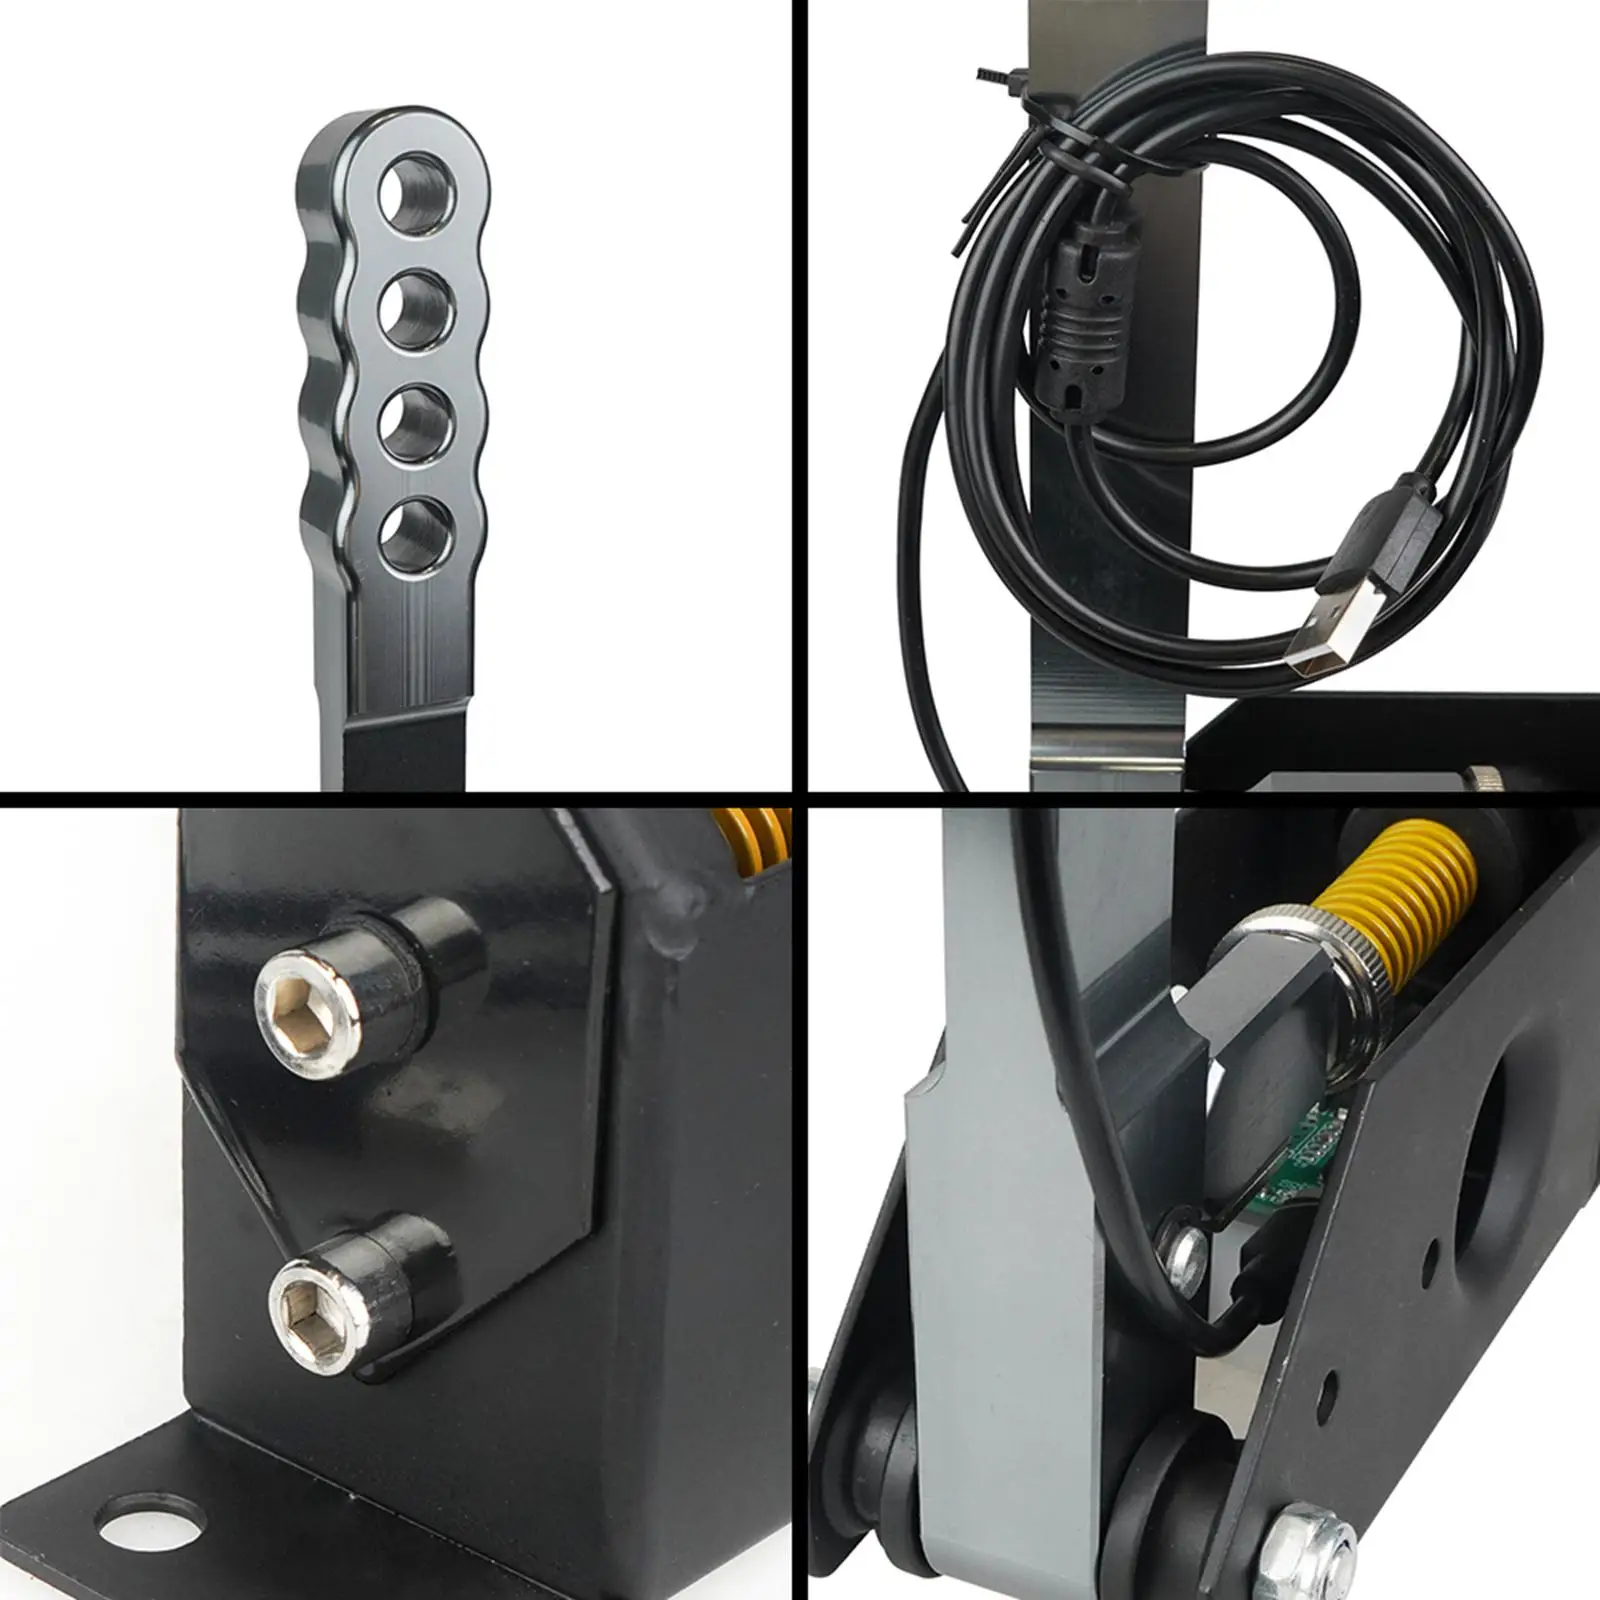 Brake System Handbrake Premium Adjustable Hall Sensor Game Peripherals Handbrake for Logitech G29 G27 G25 PC Racing Games